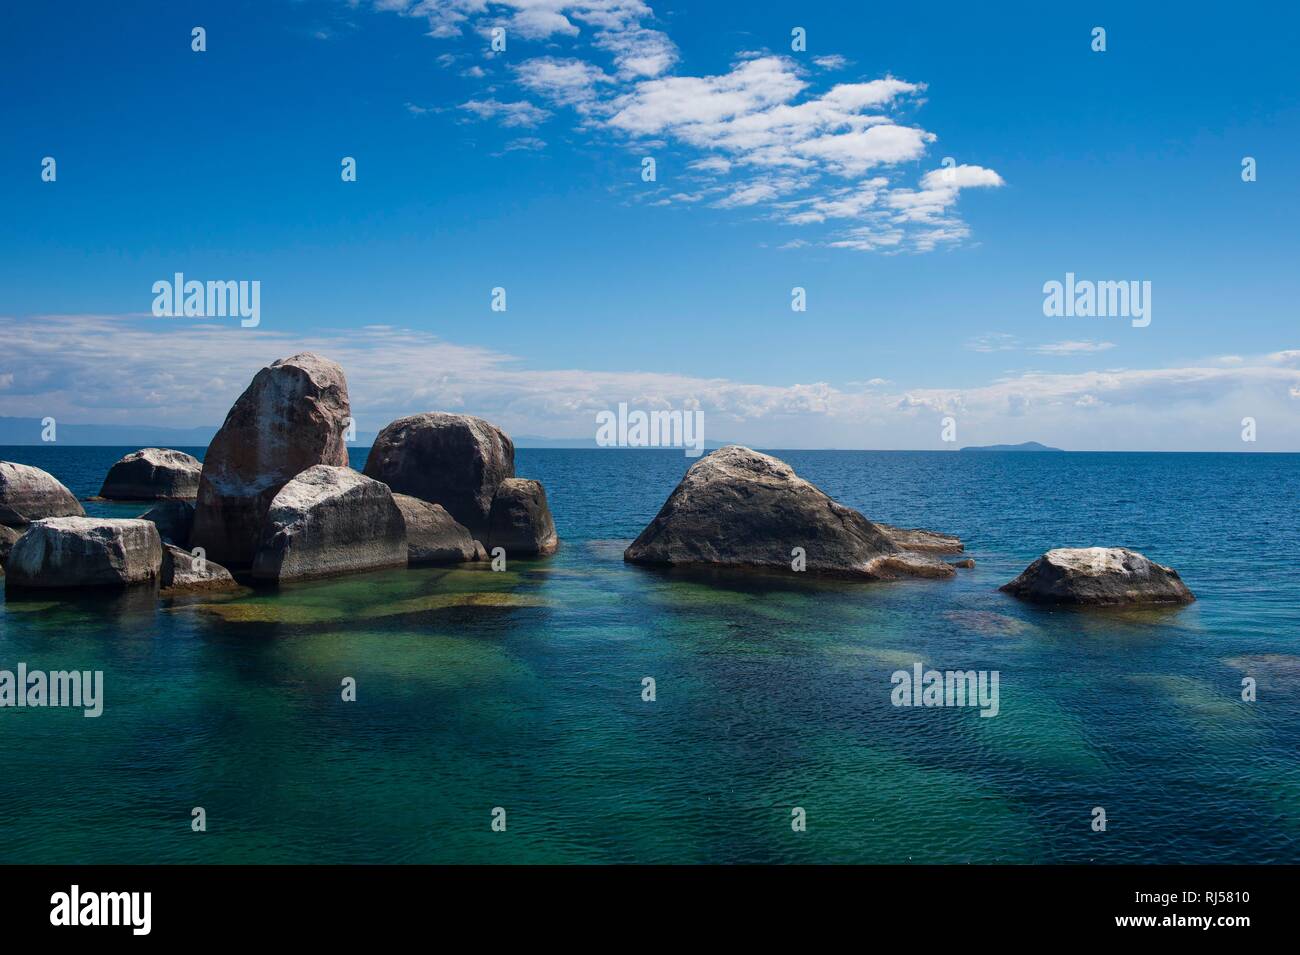 L'eau claire et turquoise, les roches de granit Mumbo Island, Cape Maclear, le lac Malawi, Malawi Banque D'Images